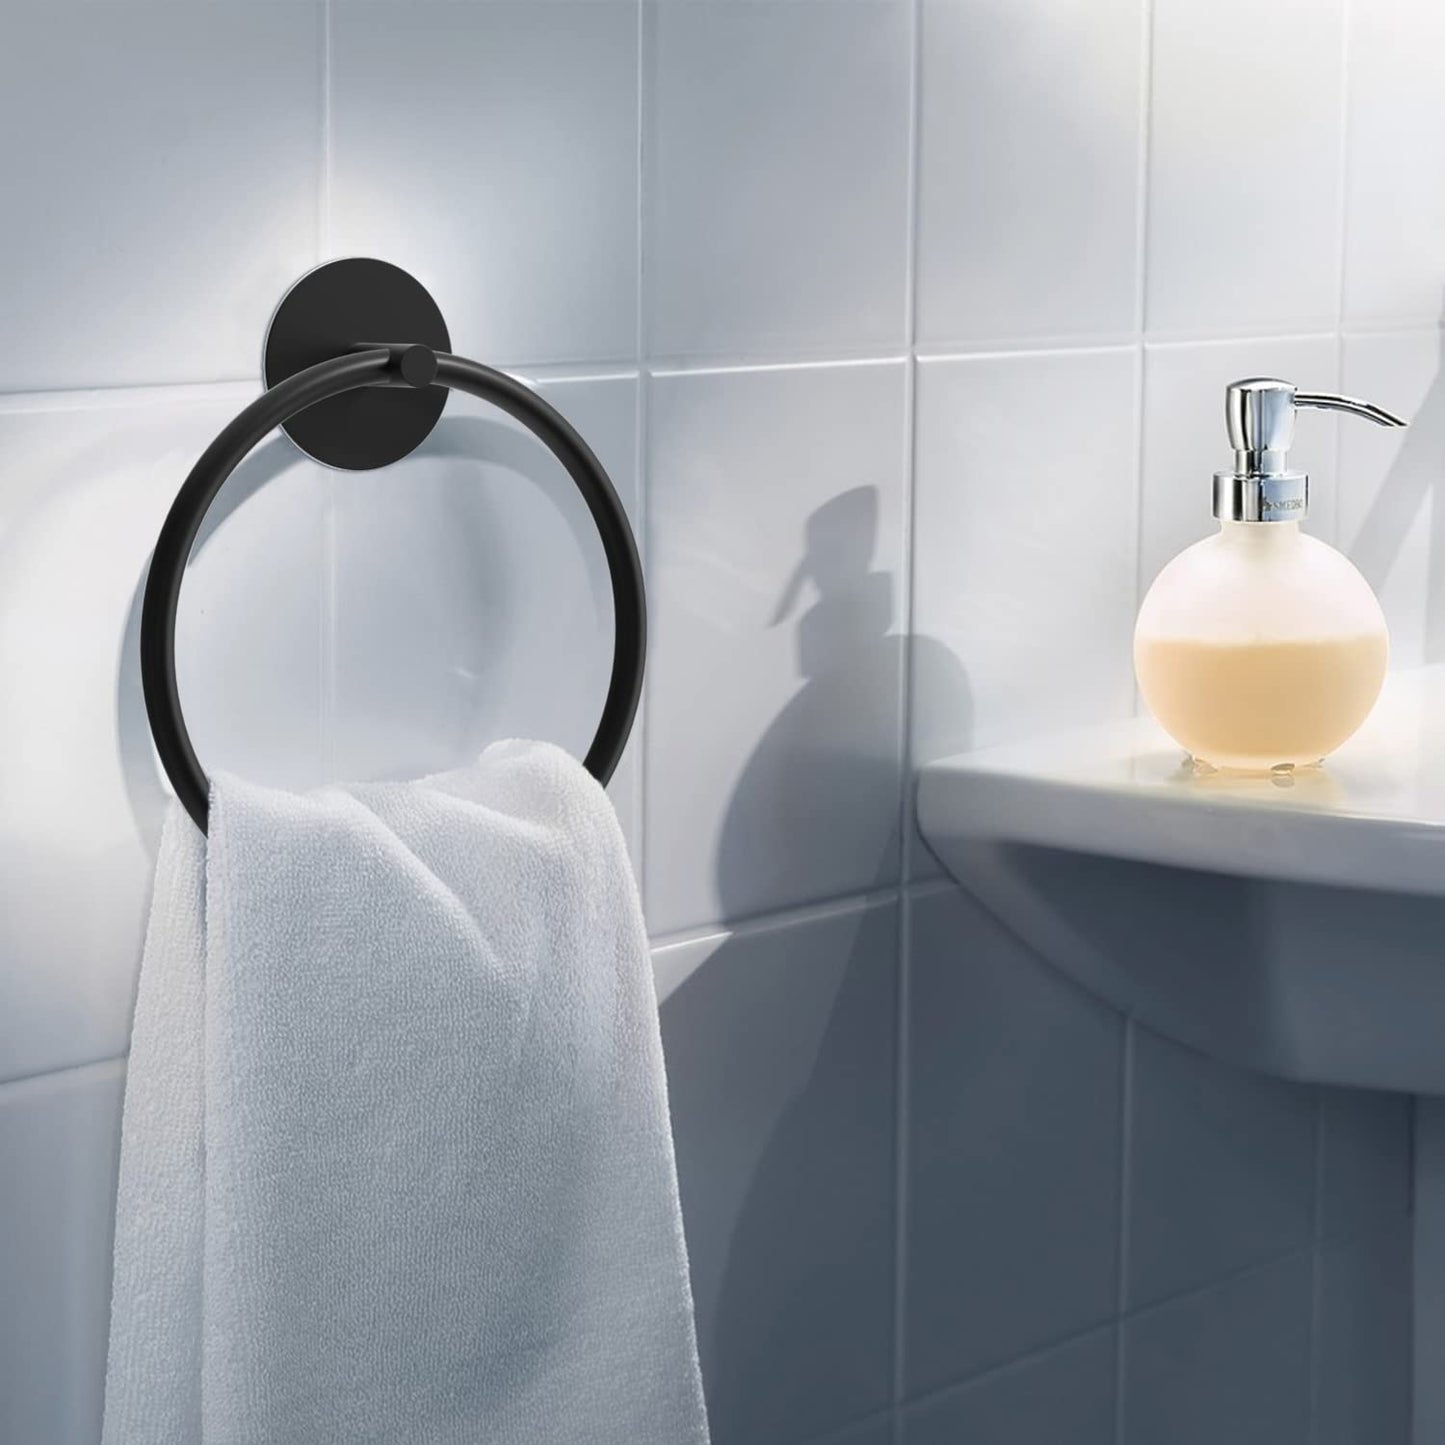 Bathroom Towel Ring Bathroom Towel Rack Adhesive Hand Towels Holder Towel Hanger Round Black